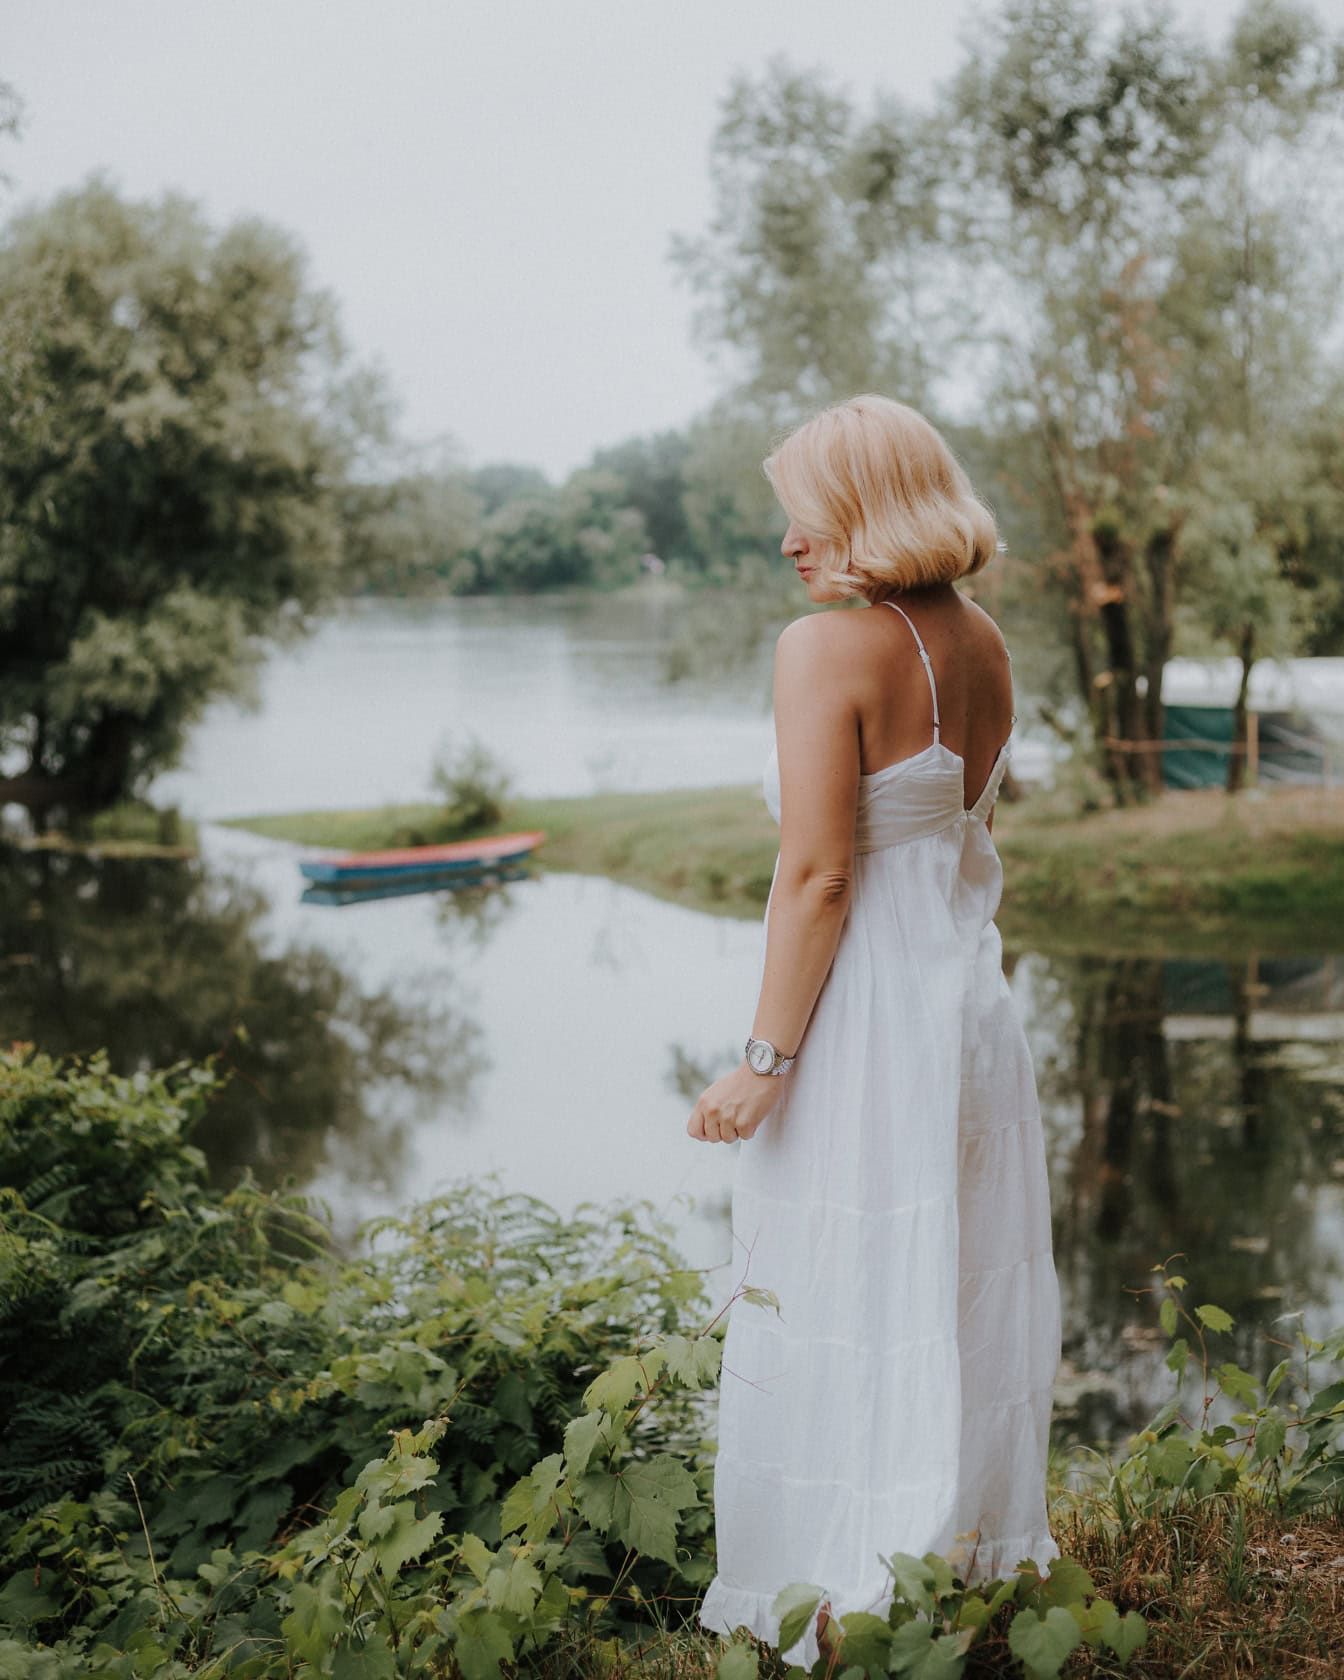 Μια όμορφη νύφη σε εξοχικό στυλ νυφικό στέκεται δίπλα σε μια λίμνη